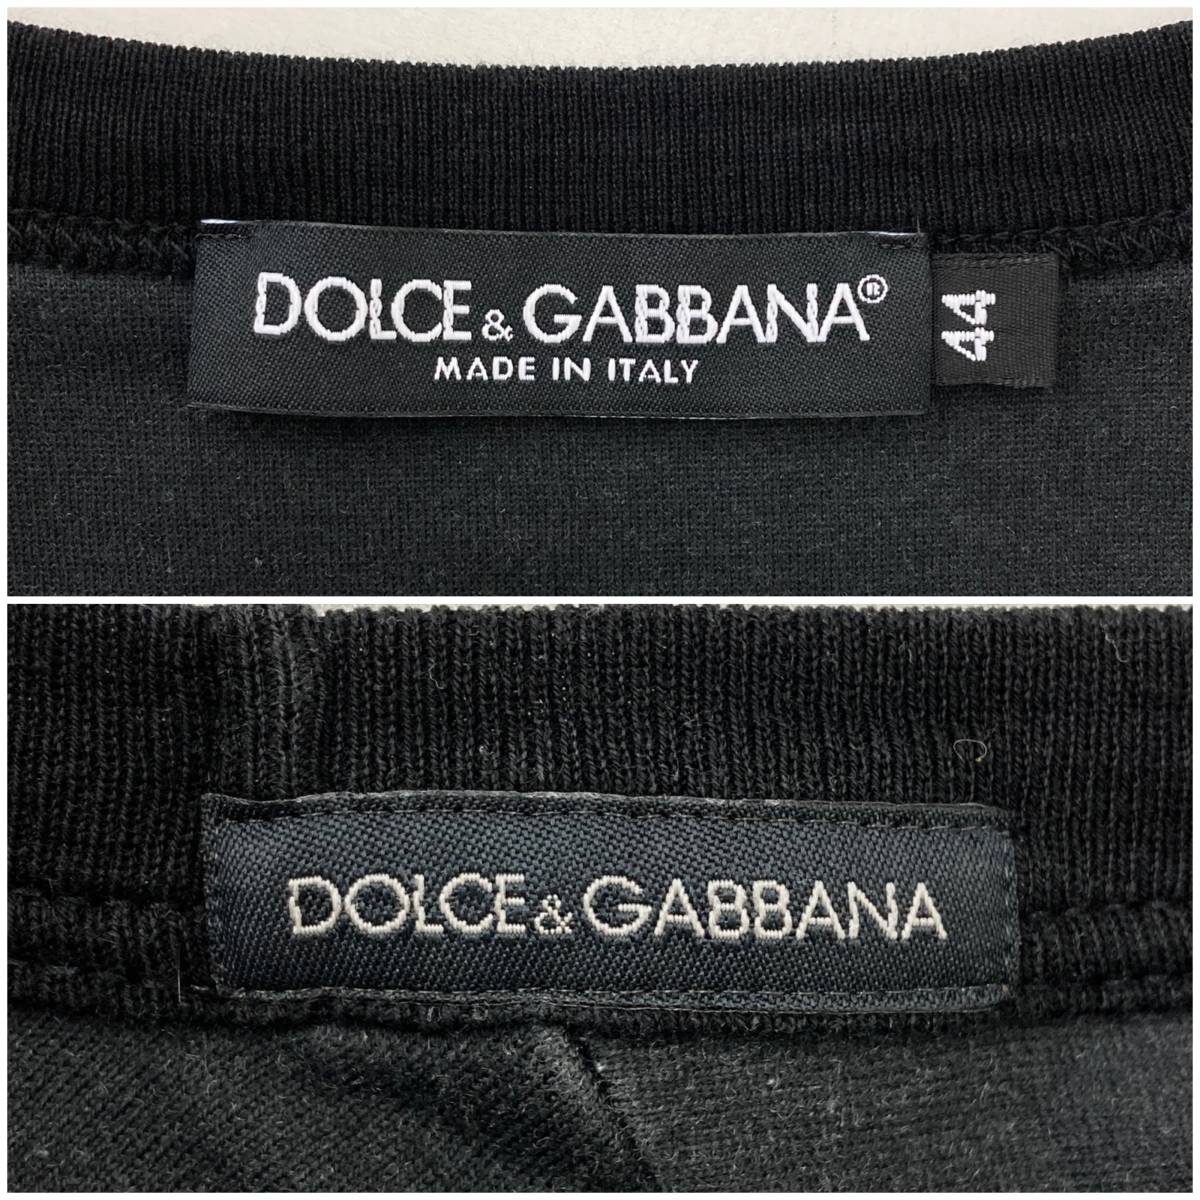 DOLCE&GABBANA イタリア製 総柄 半袖 Tシャツ メンズ 44サイズ (Sサイズ) ドルチェ&ガッバーナ ドルガバ D&G カウボーイ 3050072_画像4